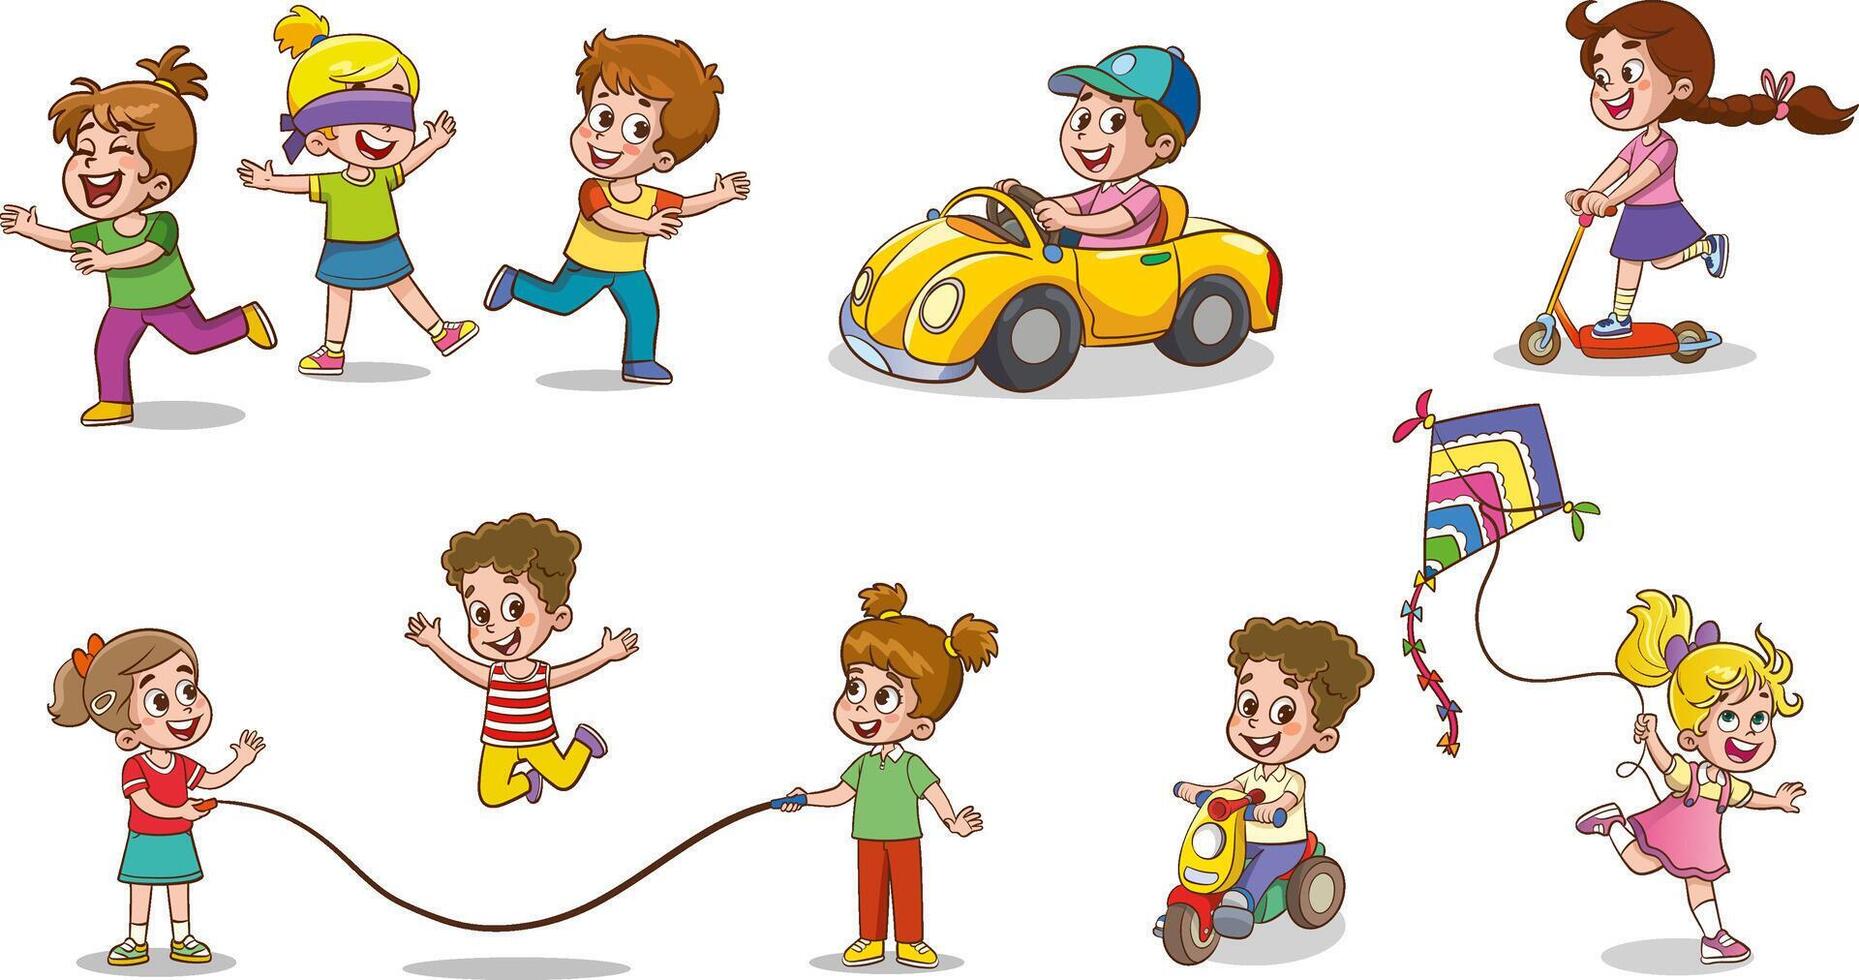 niños jugando ilustración colocar. dibujos animados contento chico y niña caracteres jugando diferente divertido juegos juntos ilustración vector